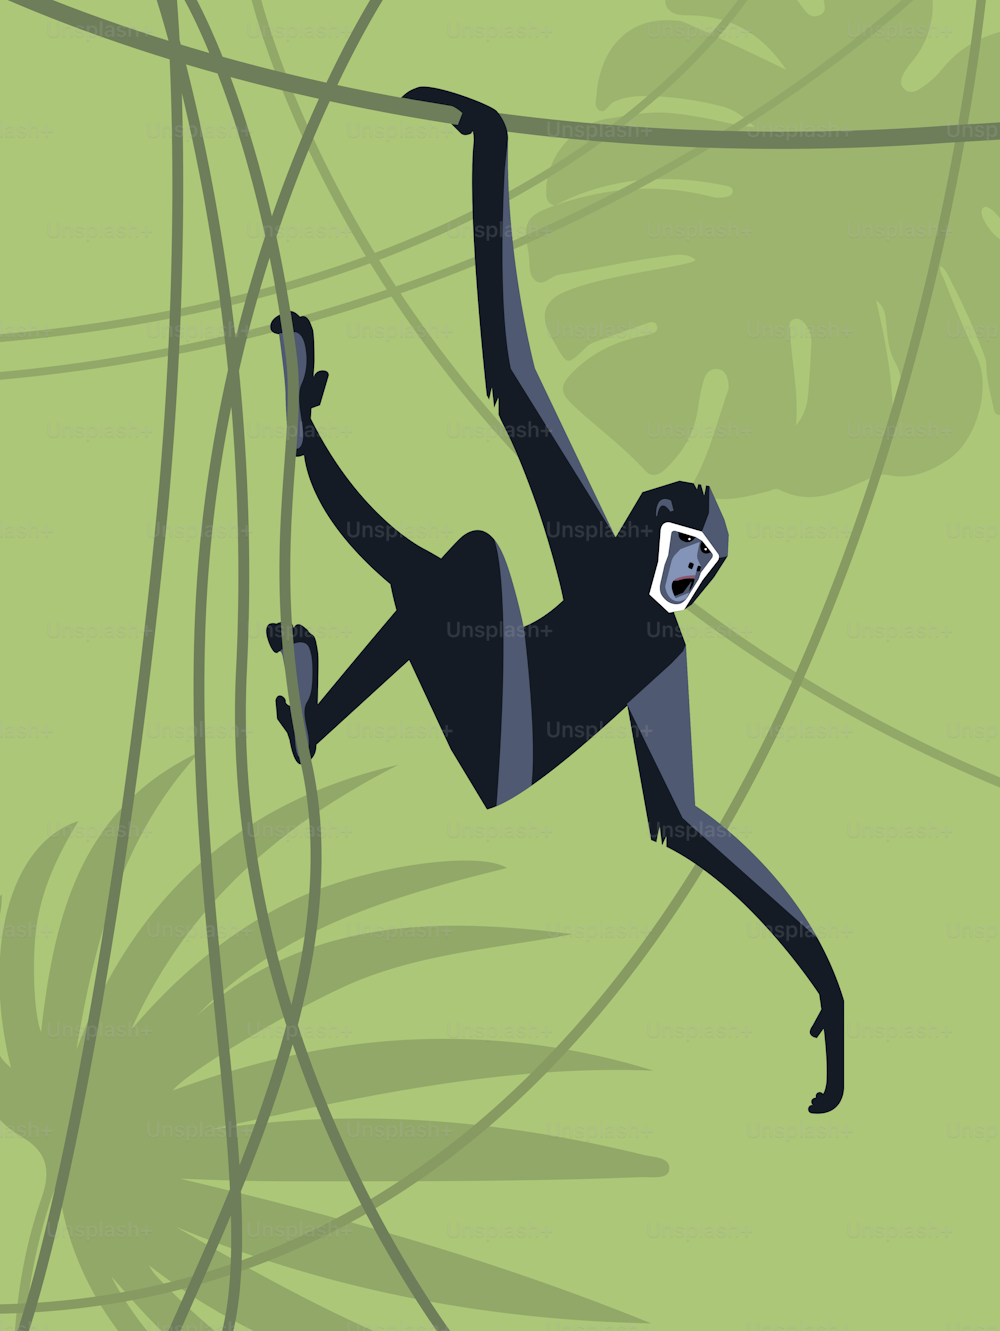 Una scimmia si appende a una liana e urla con rabbia sullo sfondo di una giungla verde, immagine stilizzata, illustrazione vettoriale